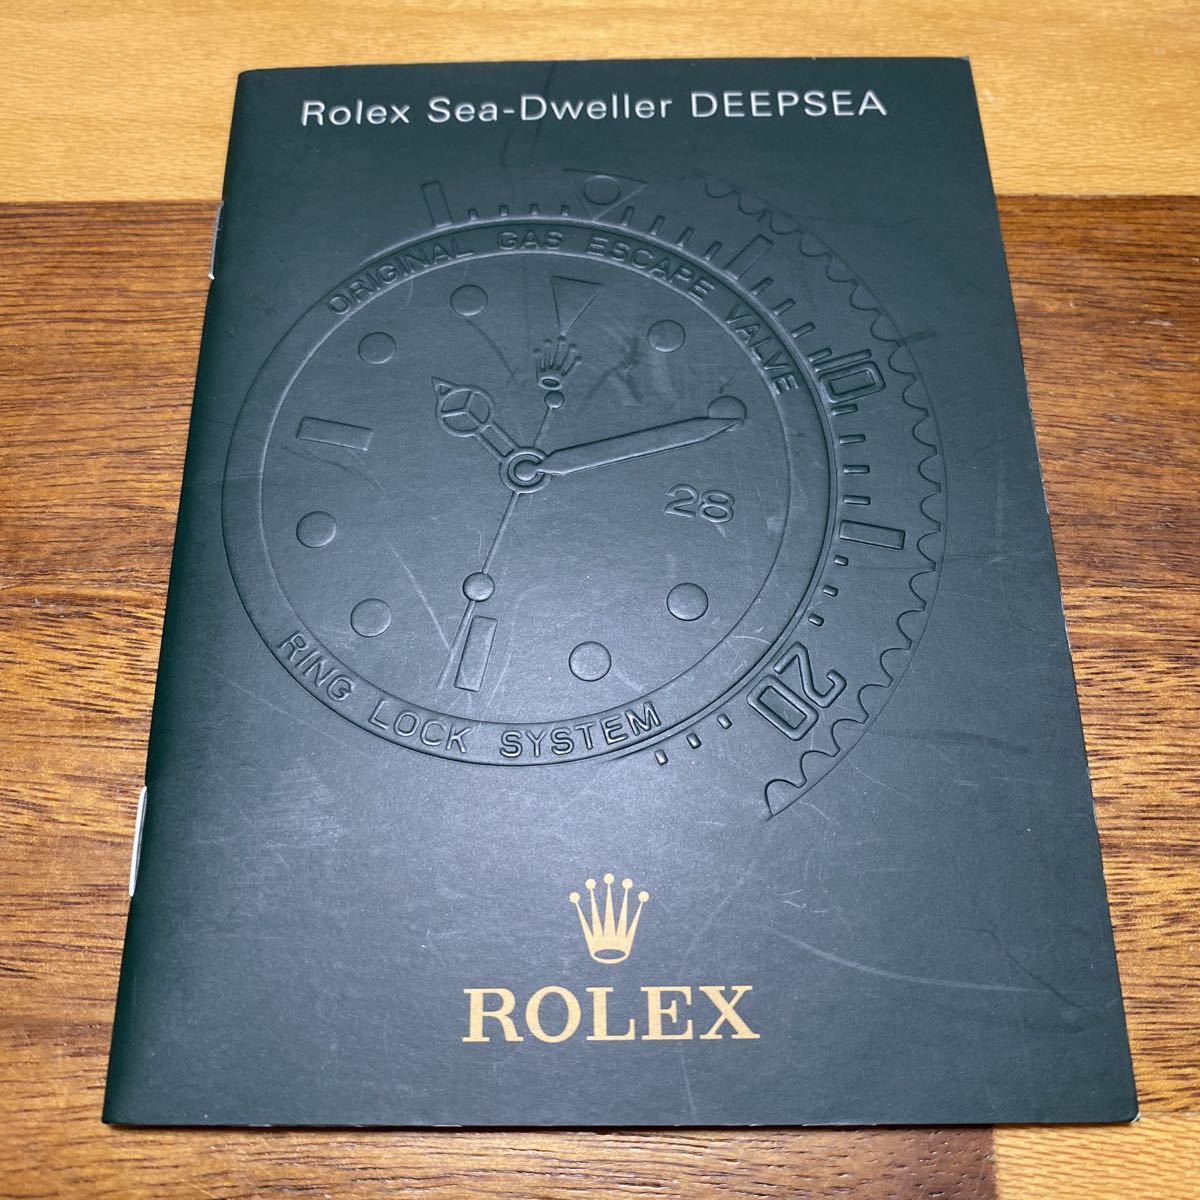 本日の目玉 ブランド激安セール会場 2860ロレックス シードゥエラー ディープシー冊子 2008年度版 ROLEX SEA-DWELLER DEEPSEA bigportal.ba bigportal.ba